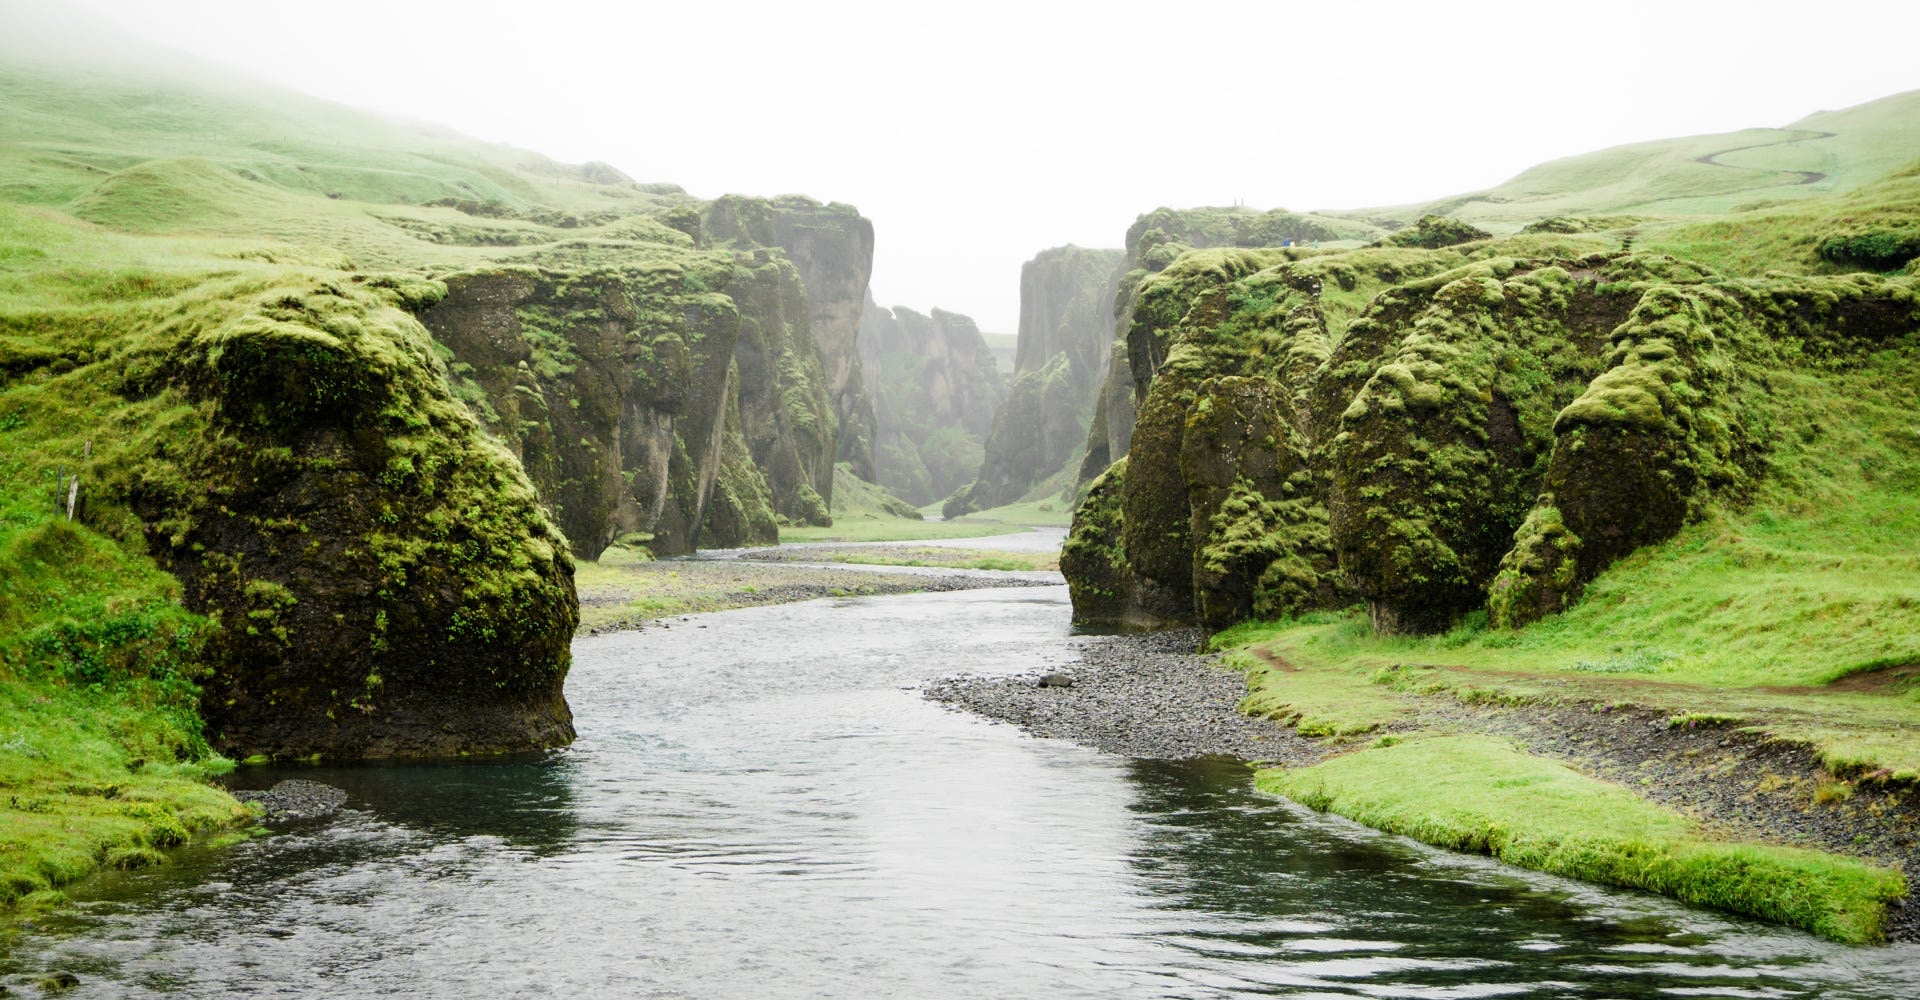 Bild eines mäandernden Flusses - das Vorbild der Natur, an der sich der Tangential Separator orientiert.